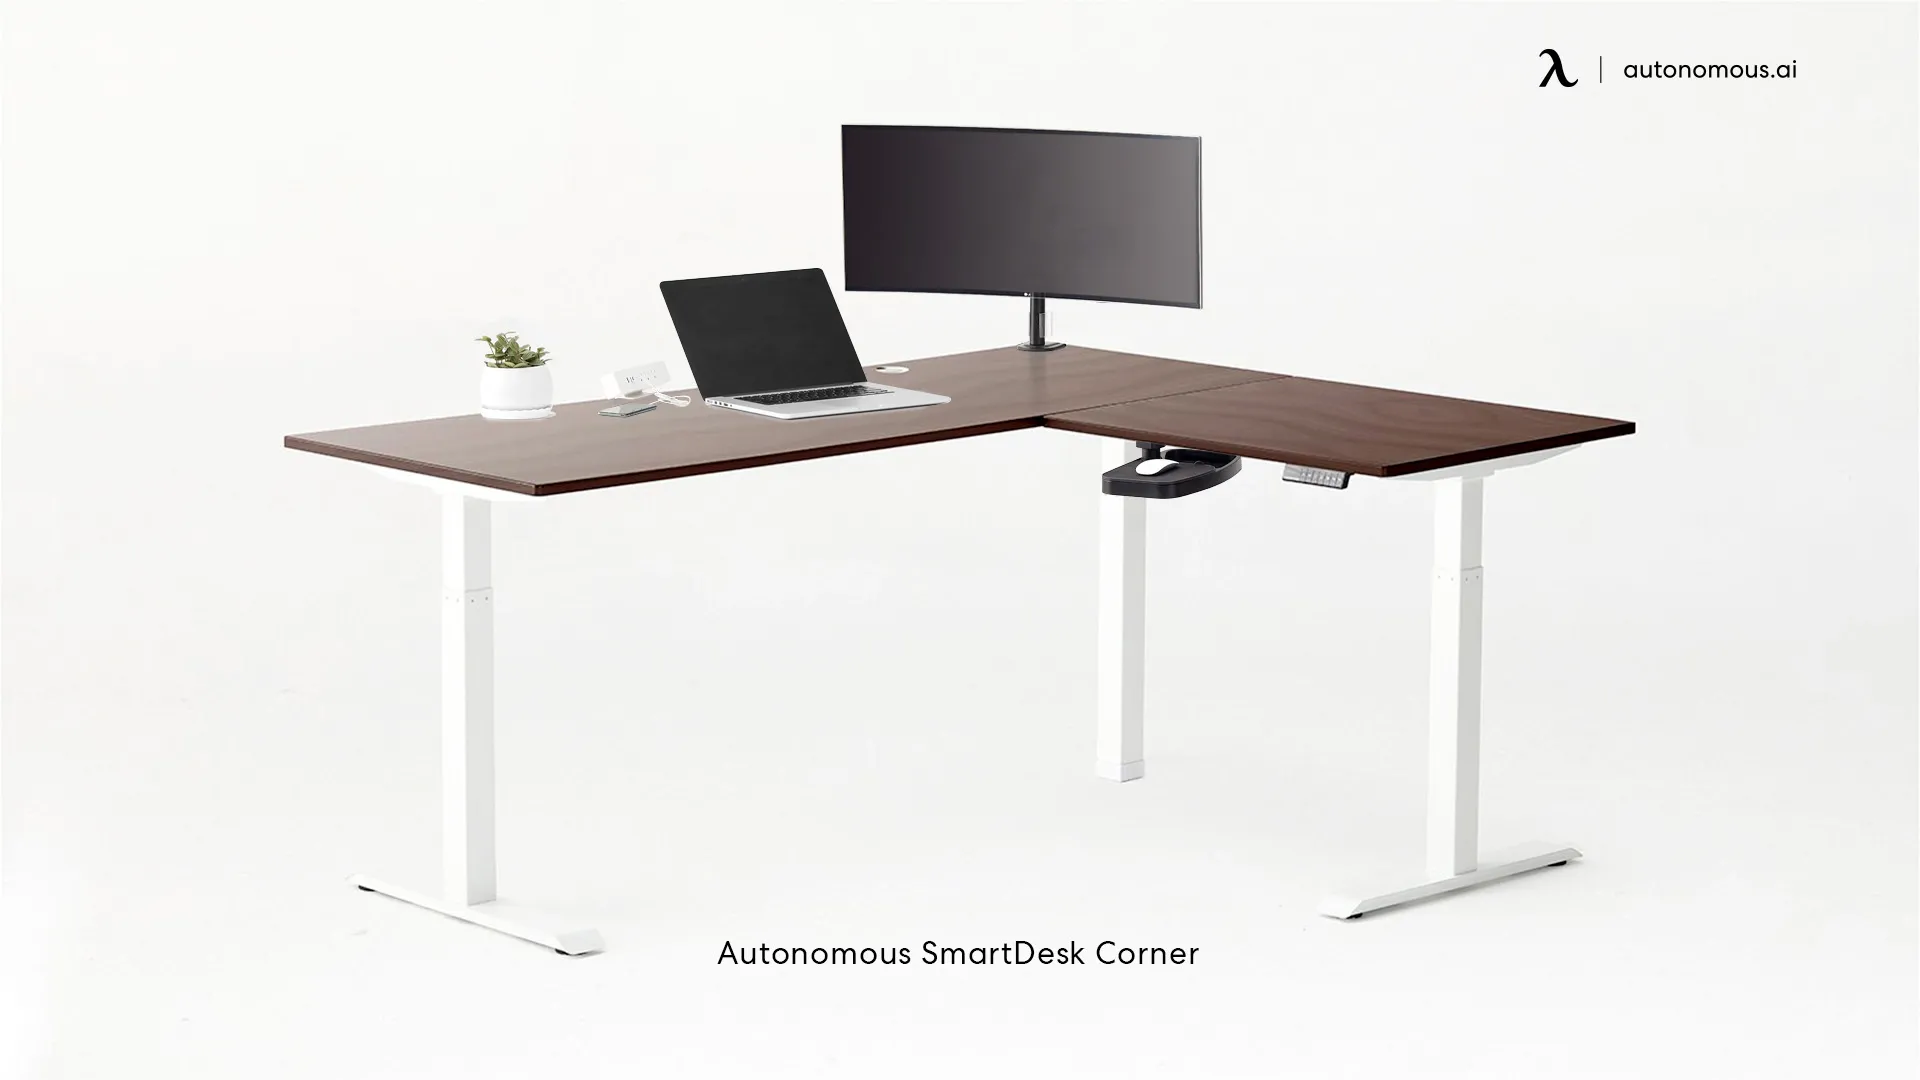 Autonomous SmartDesk Corner contemporary desk